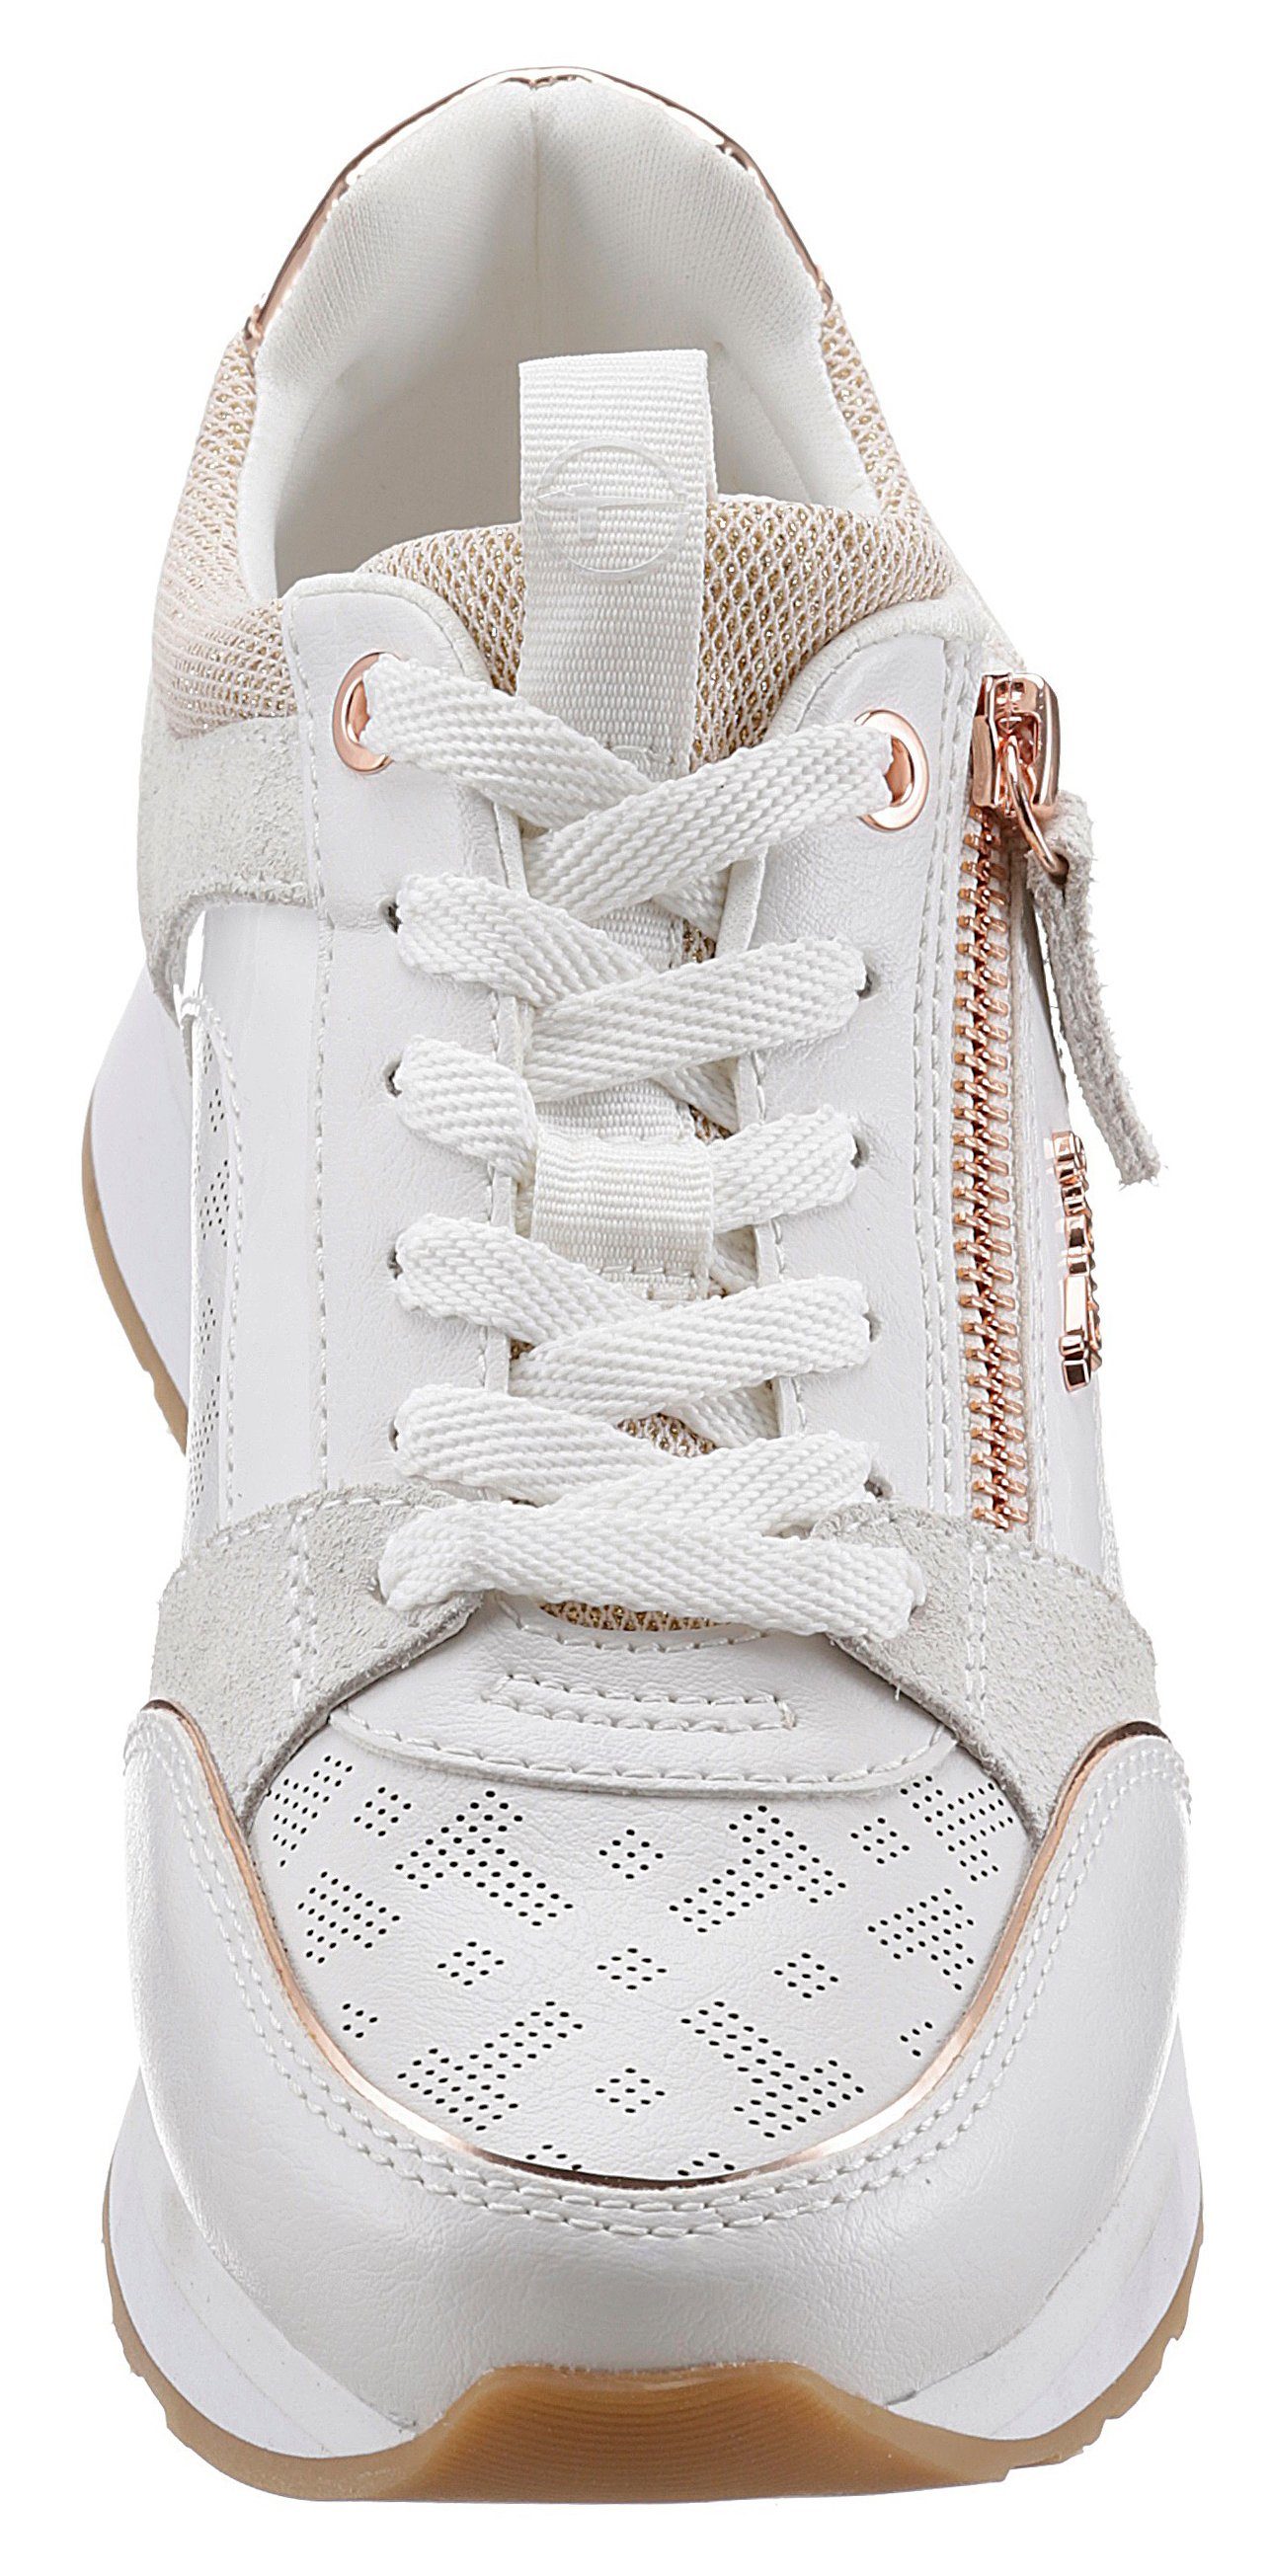 mit weiß-roségoldfarben Tamaris Reißverschluss praktischem Sneaker